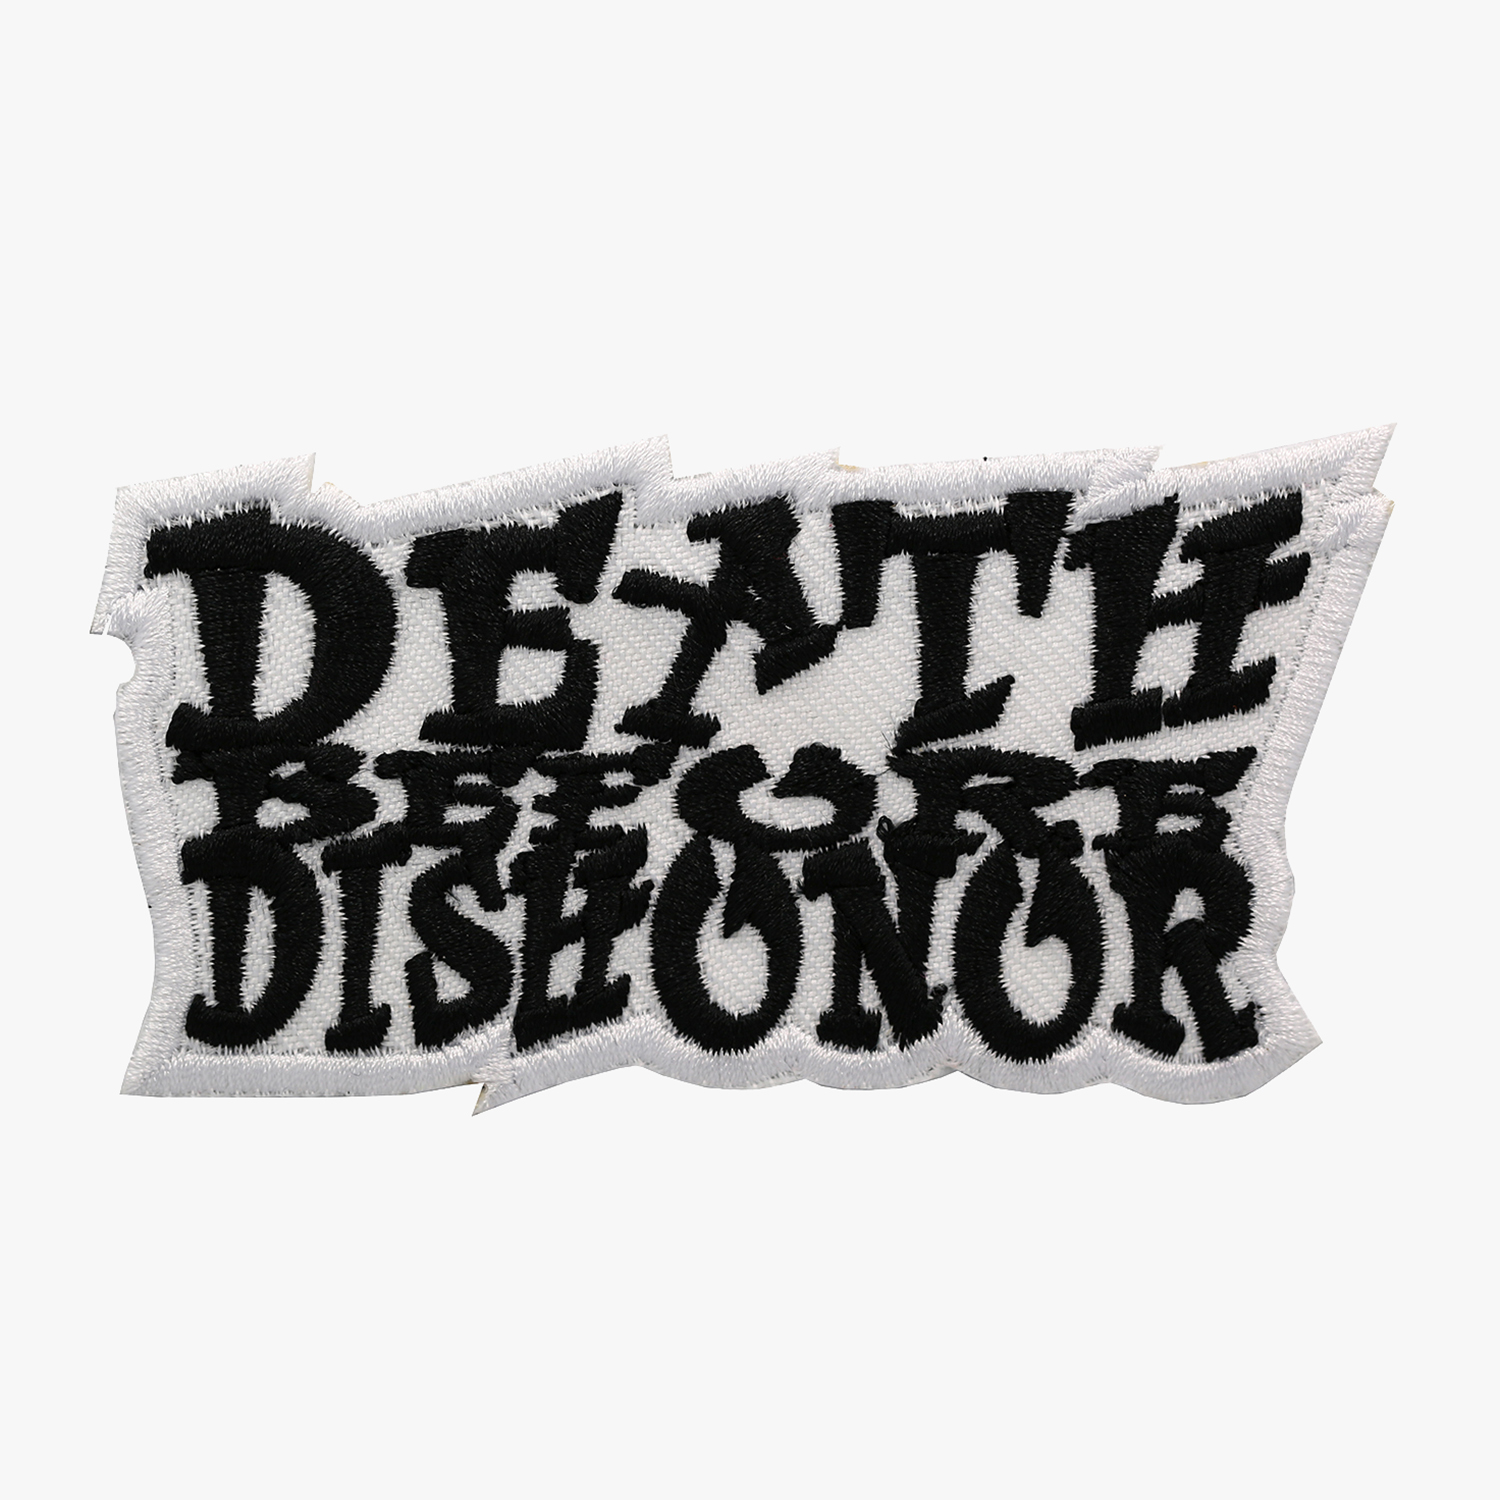 Dishonor